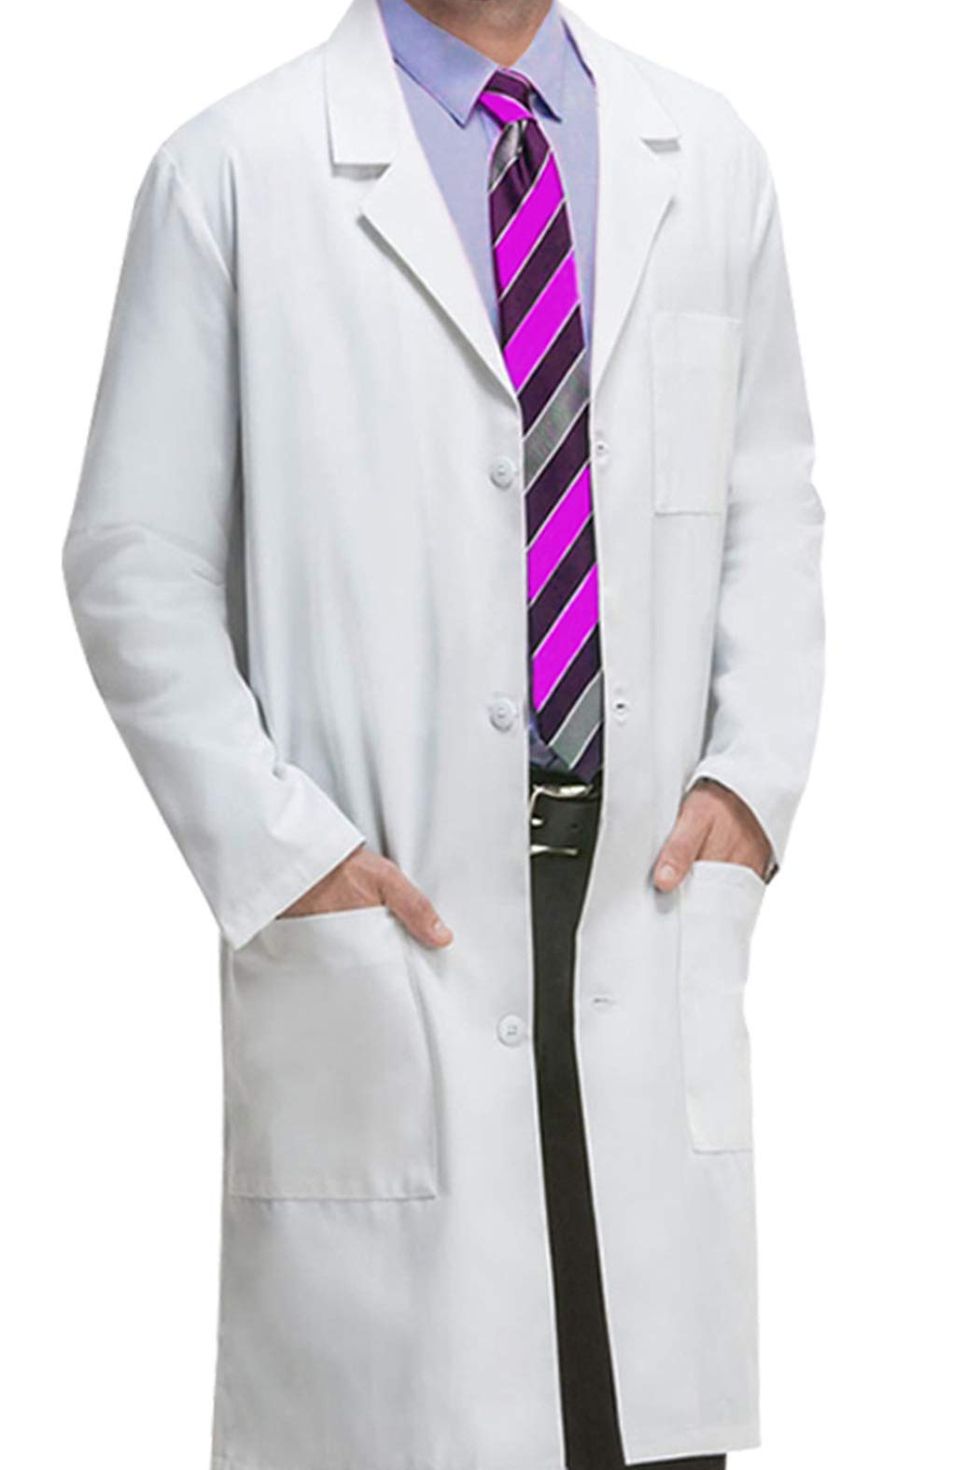 Professional Lab Coat